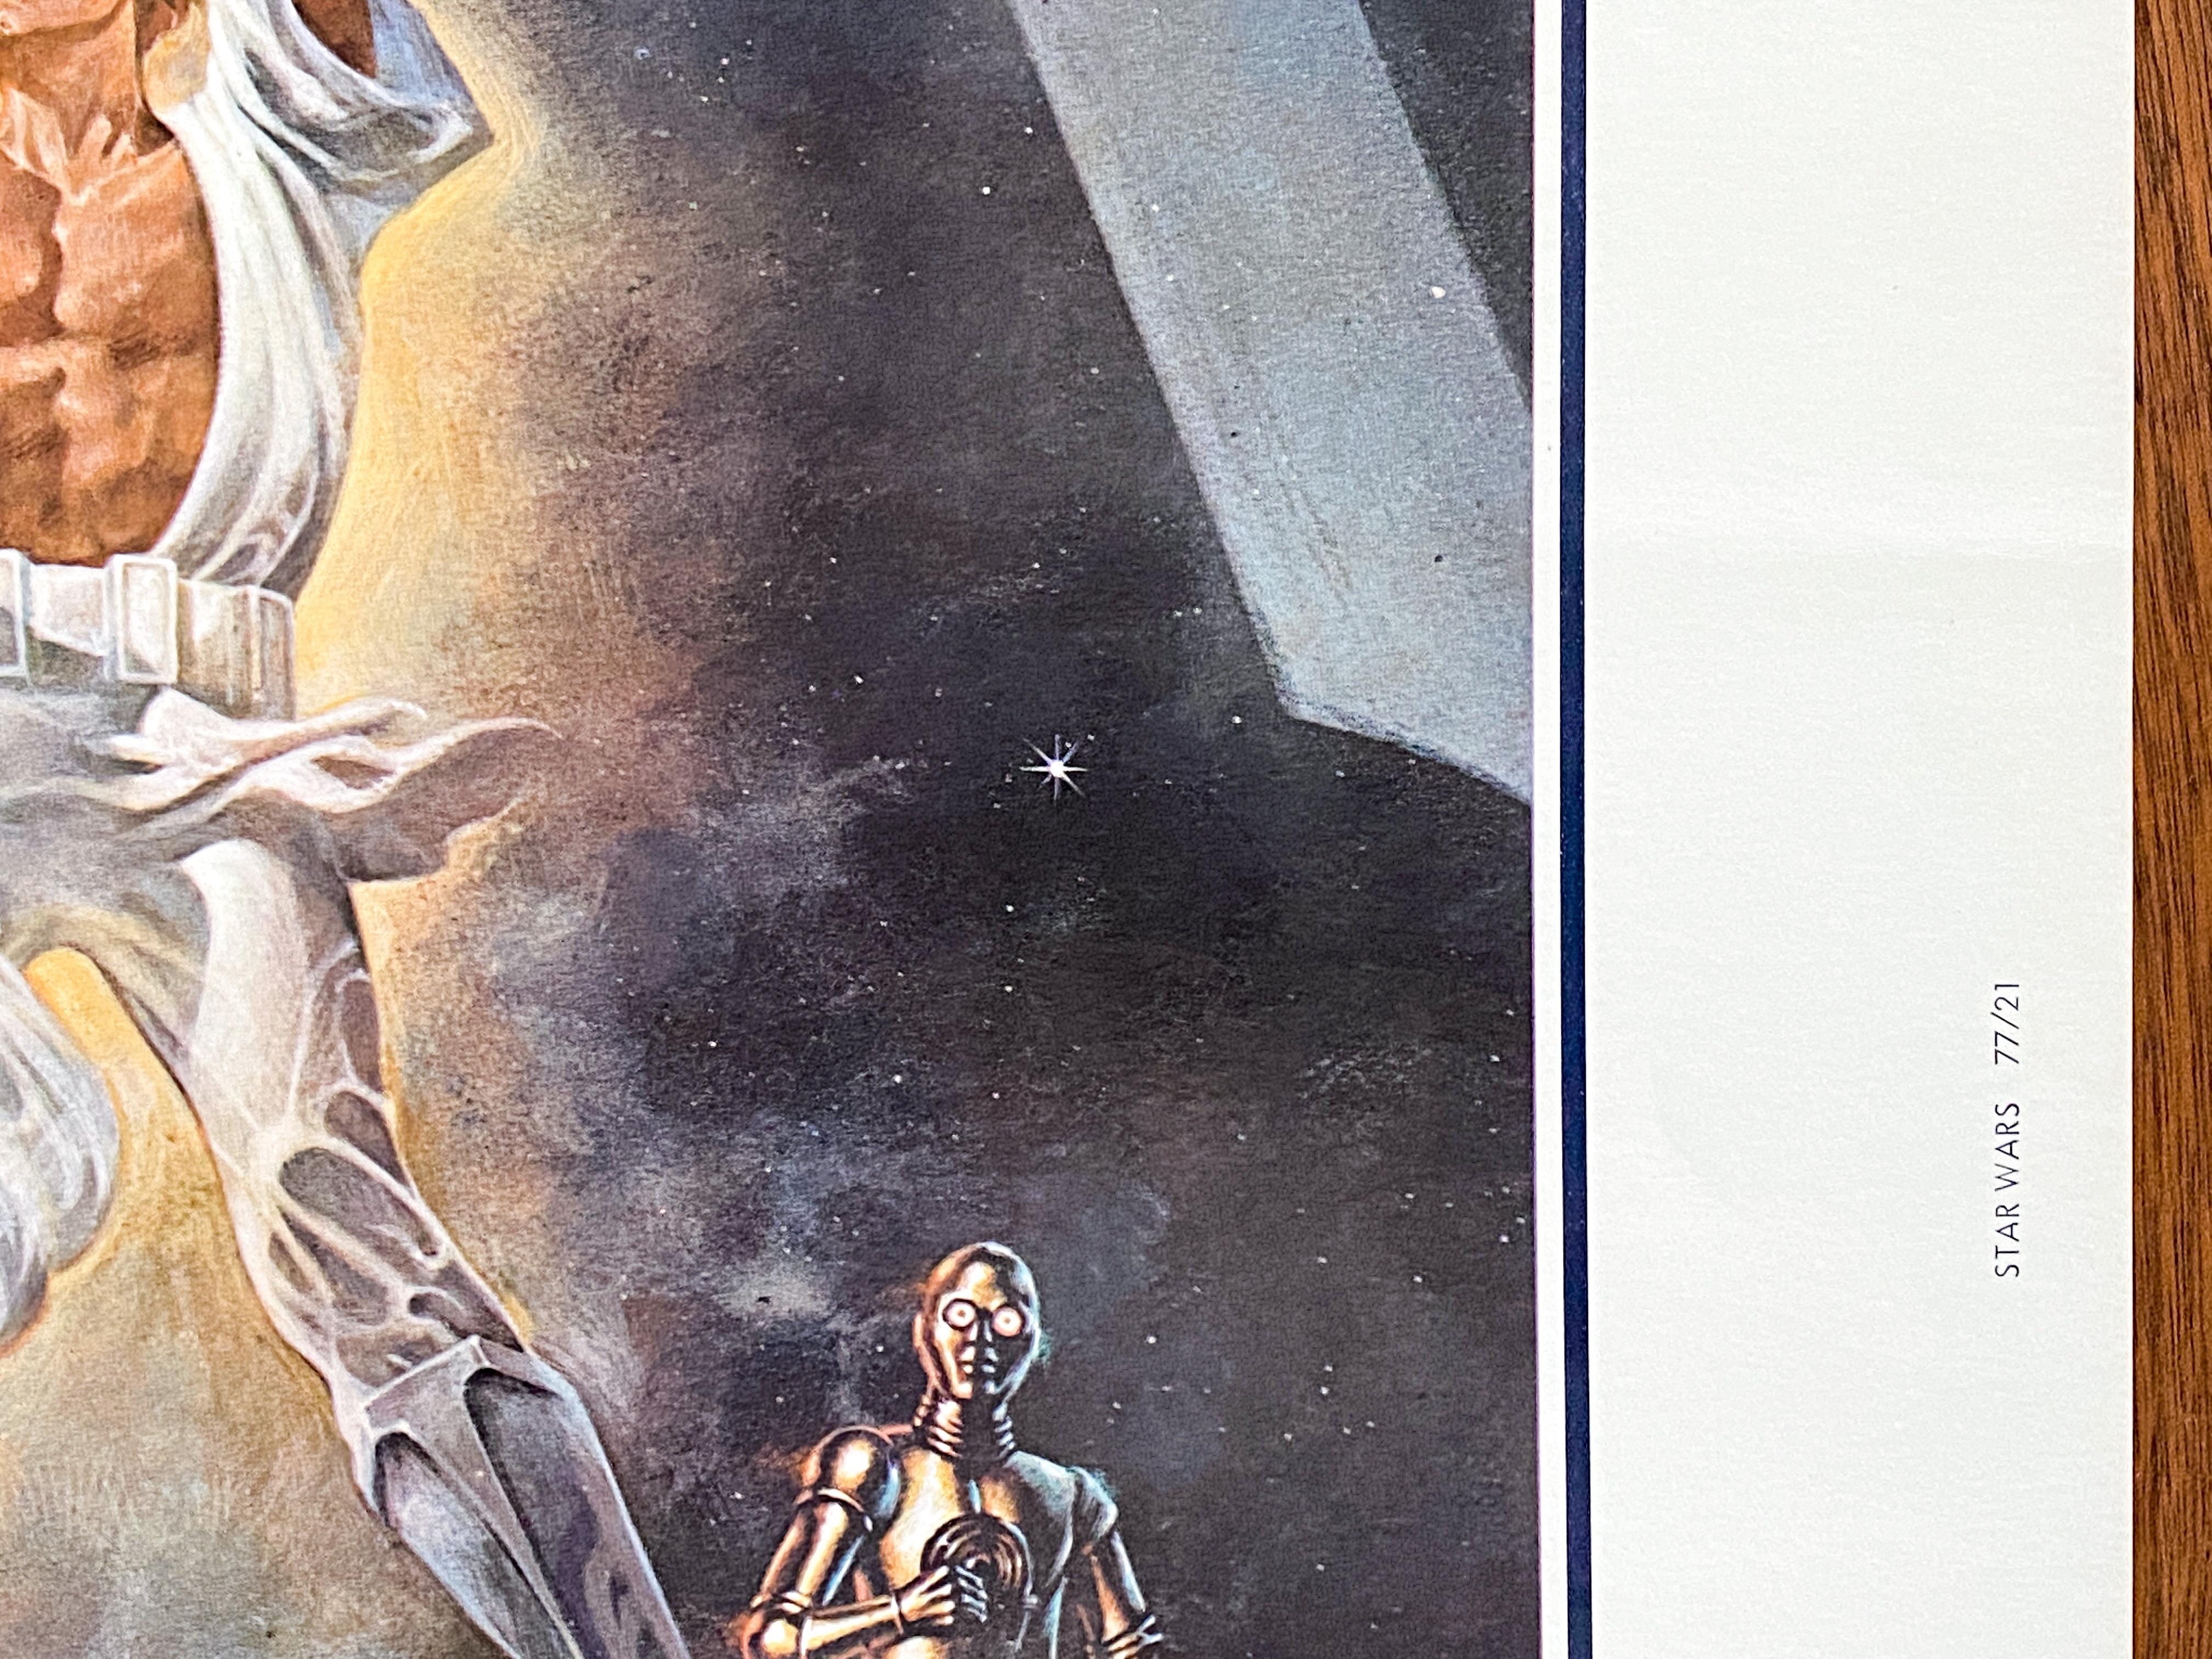 'Star Wars' Original Vintage Movie Poster by Tom Jung, American, 1977 3